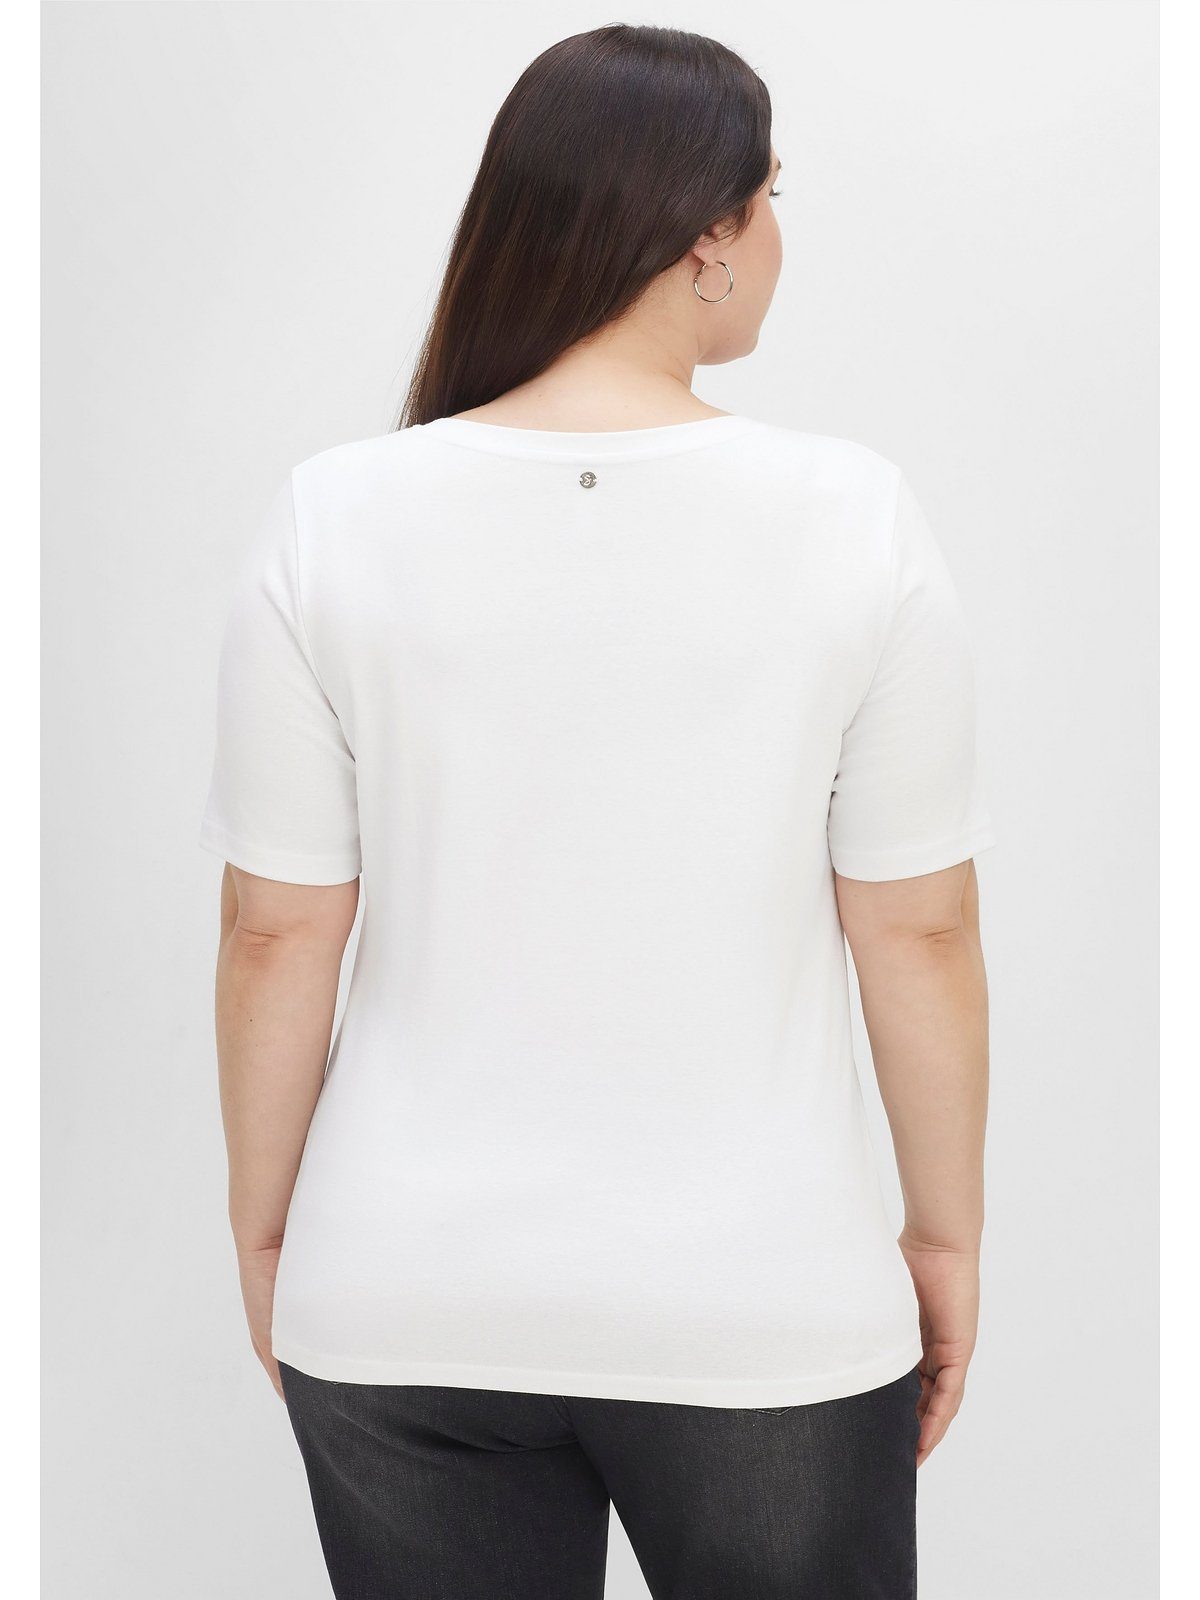 Sheego T-Shirt Große Größen in Rippstruktur, mit Knopfleiste